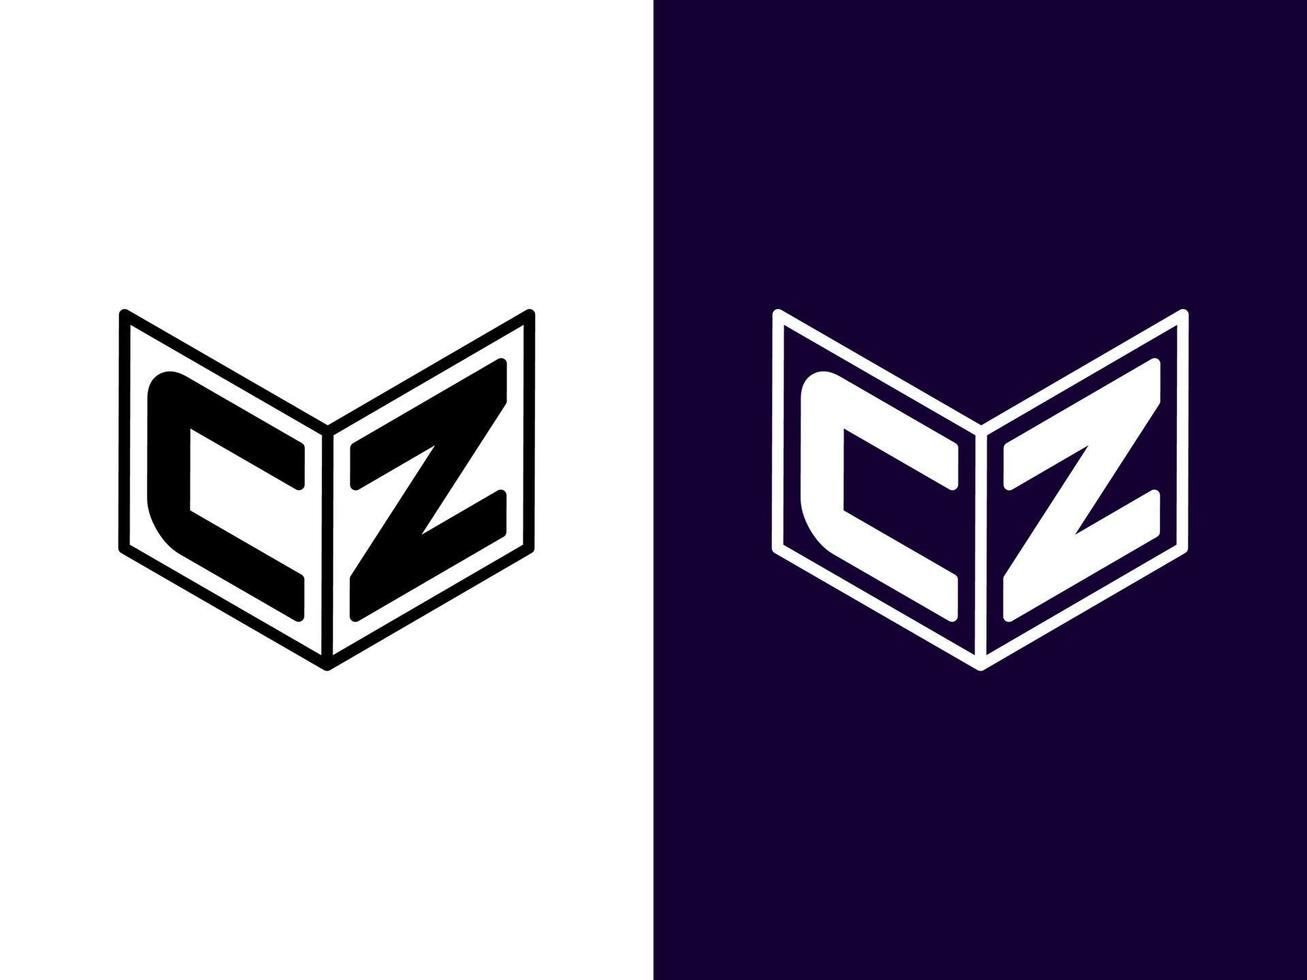 lettre initiale cz création de logo 3d minimaliste et moderne vecteur